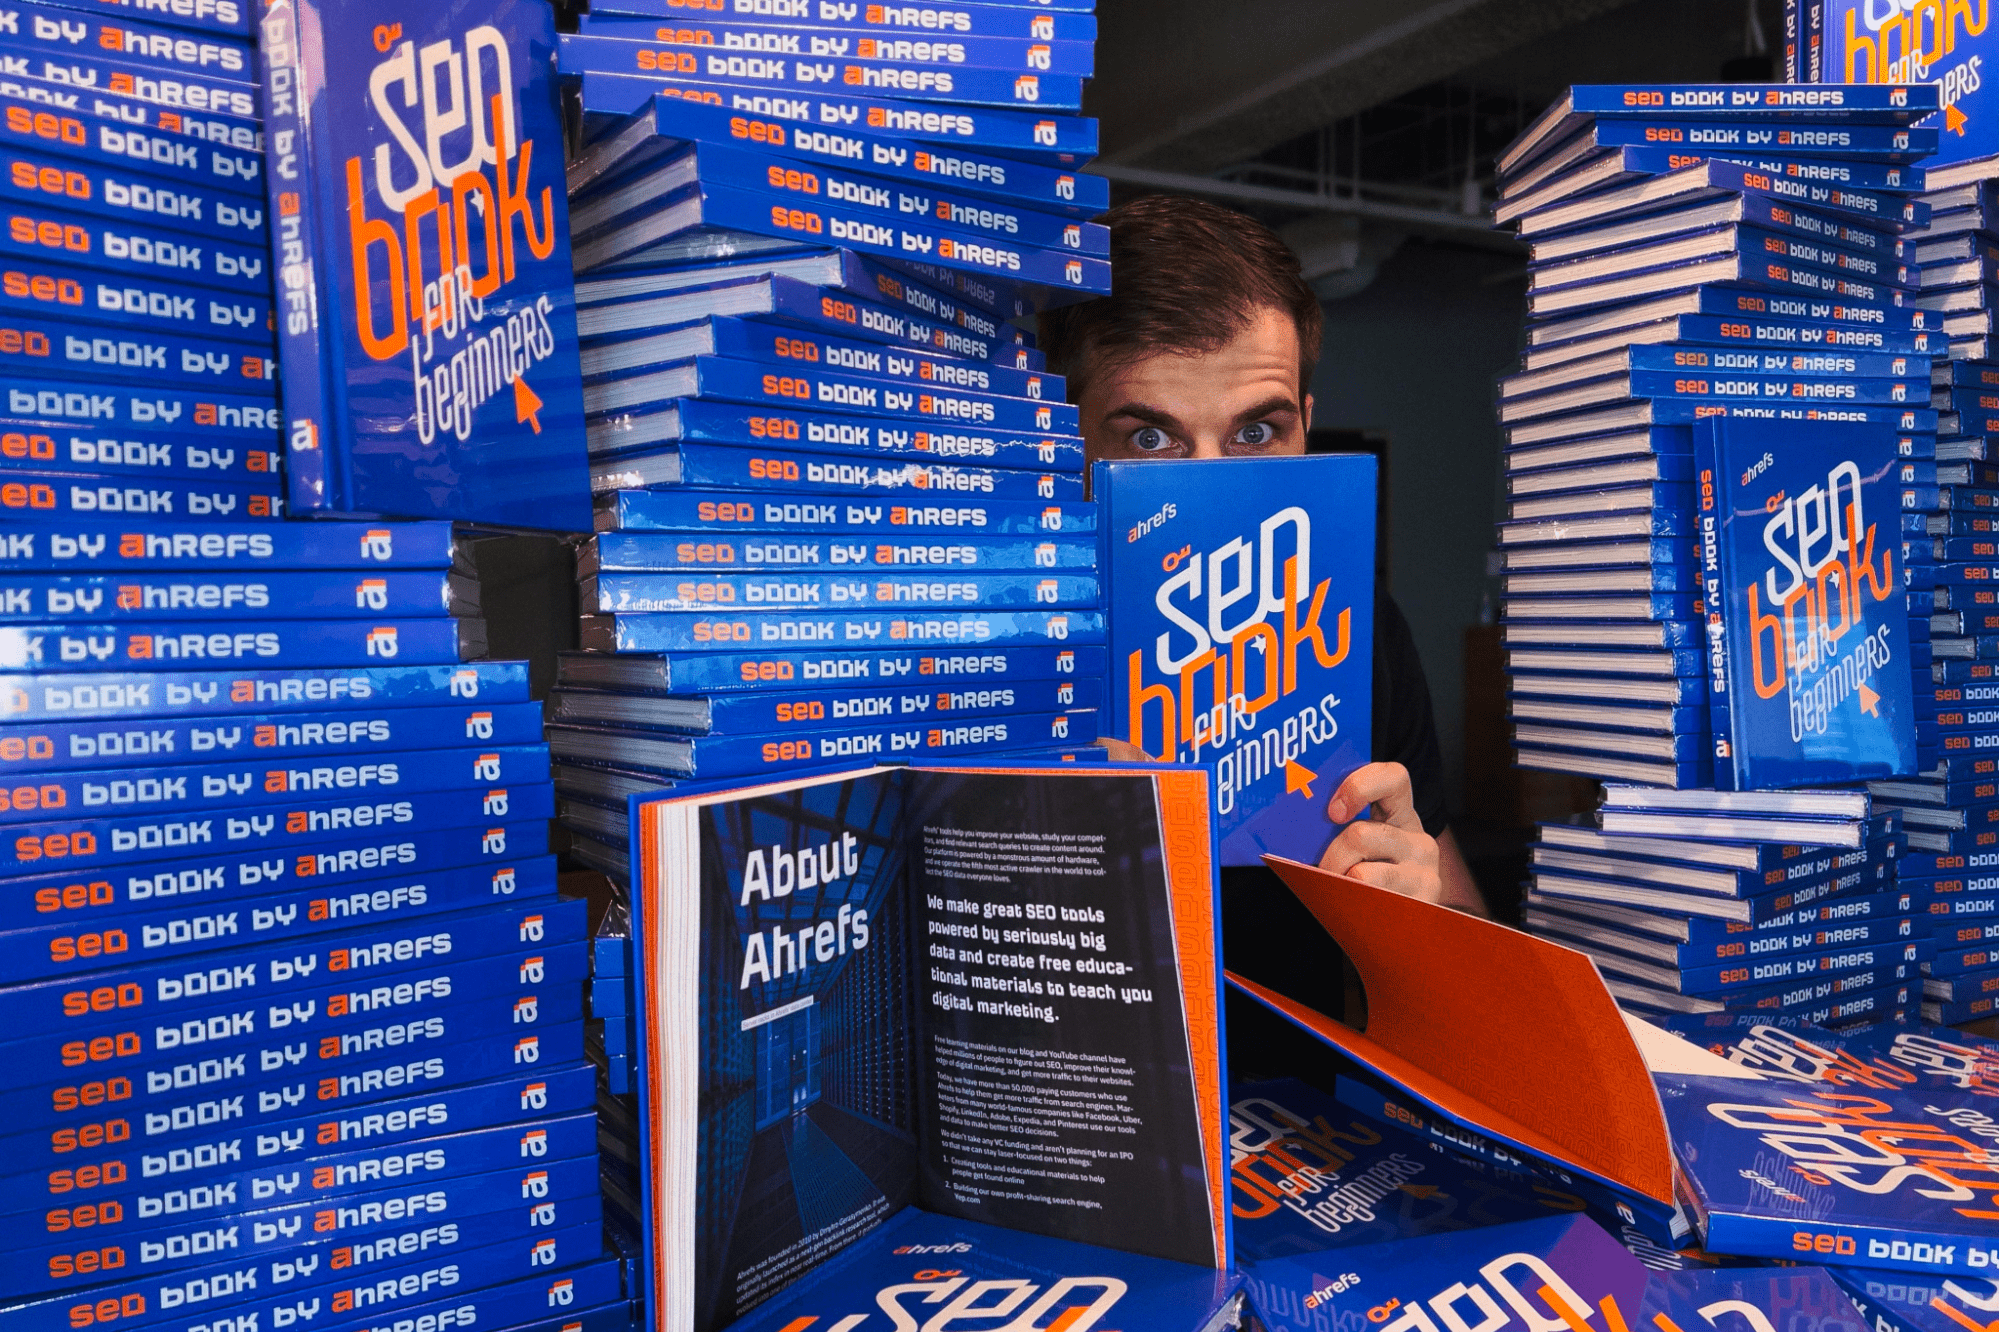 Ahrefs の CMO であるティム・ソウロ氏は、同社の書籍「SEO Book for Beginners」の山に囲まれている